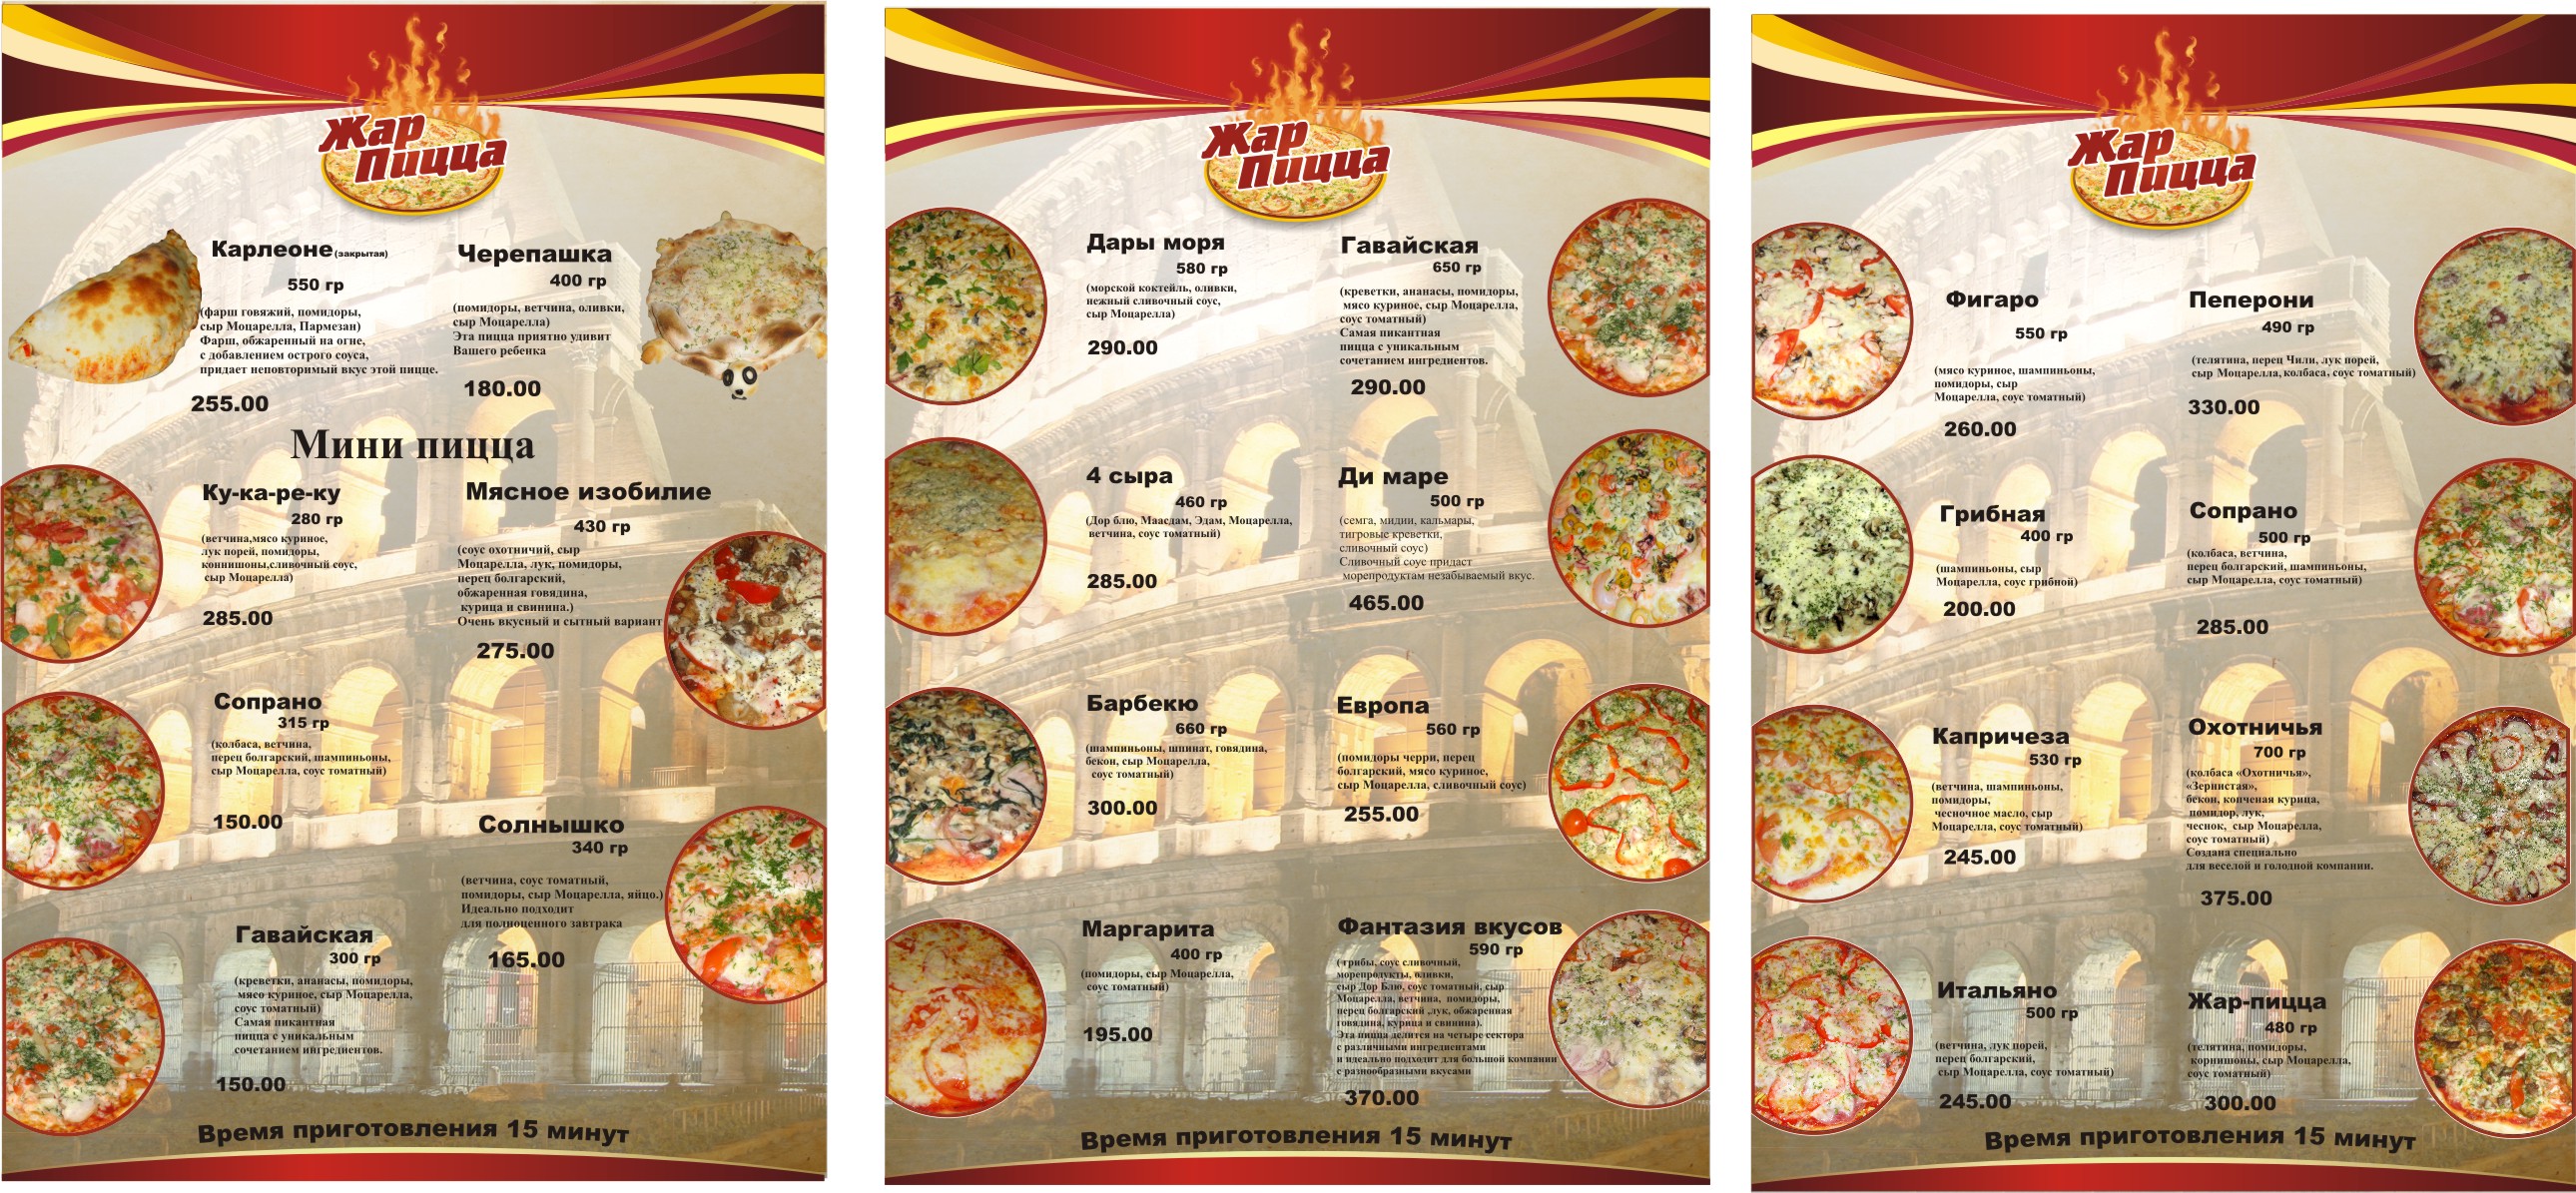 режим работы жар пицца тамбов на советской фото 26